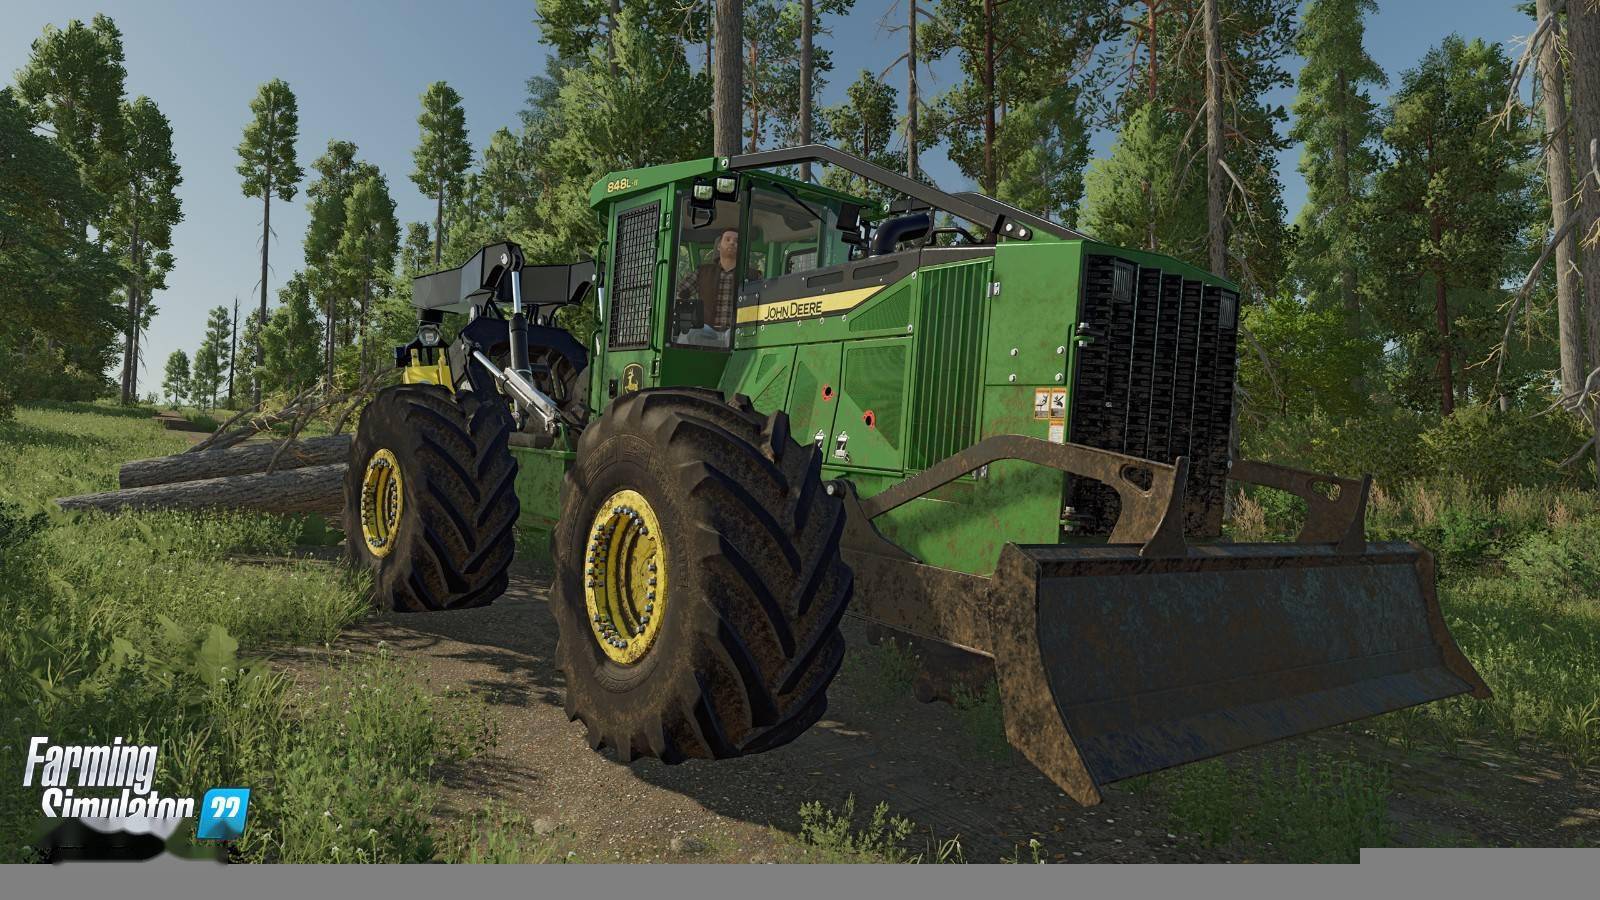 模拟农场22 白金扩展版本公开追加大量新内容 游戏 包括 功能